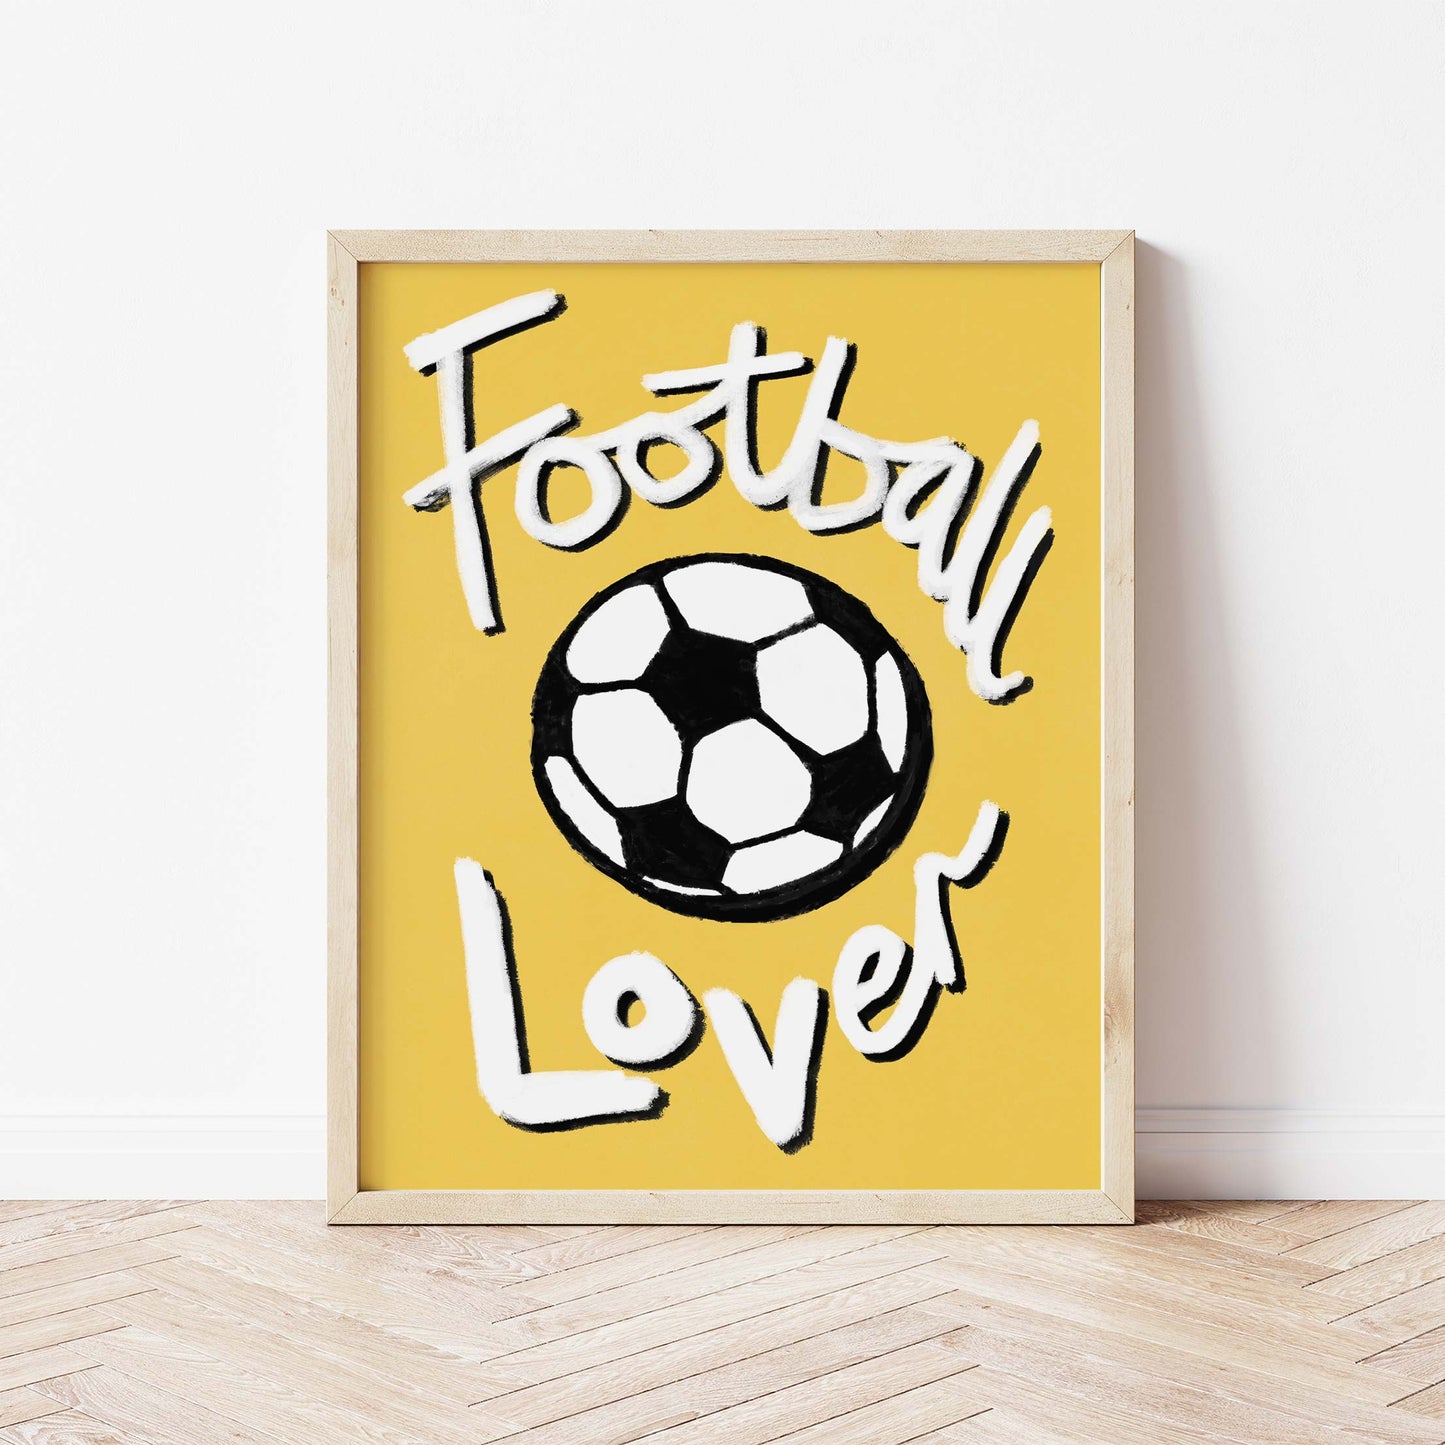 Football Lover Print - Yellow, White, Black Framed Print